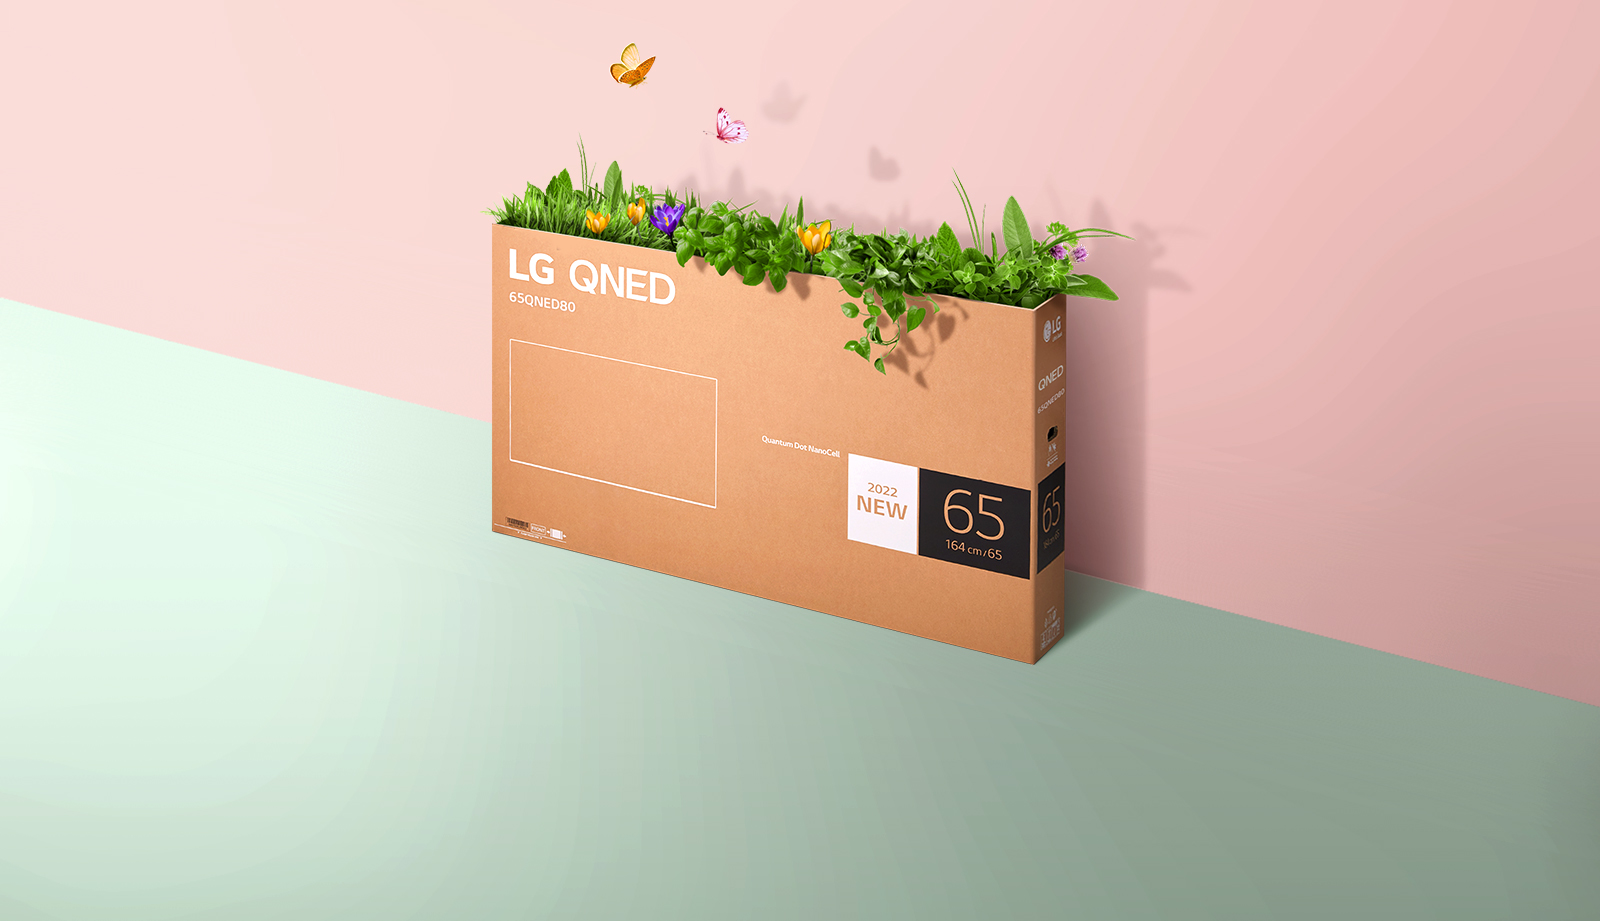 Une boîte d’emballage QNED est placée sur un fond rose et vert, avec de l’herbe qui pousse et des papillons qui sortent de la boîte. 